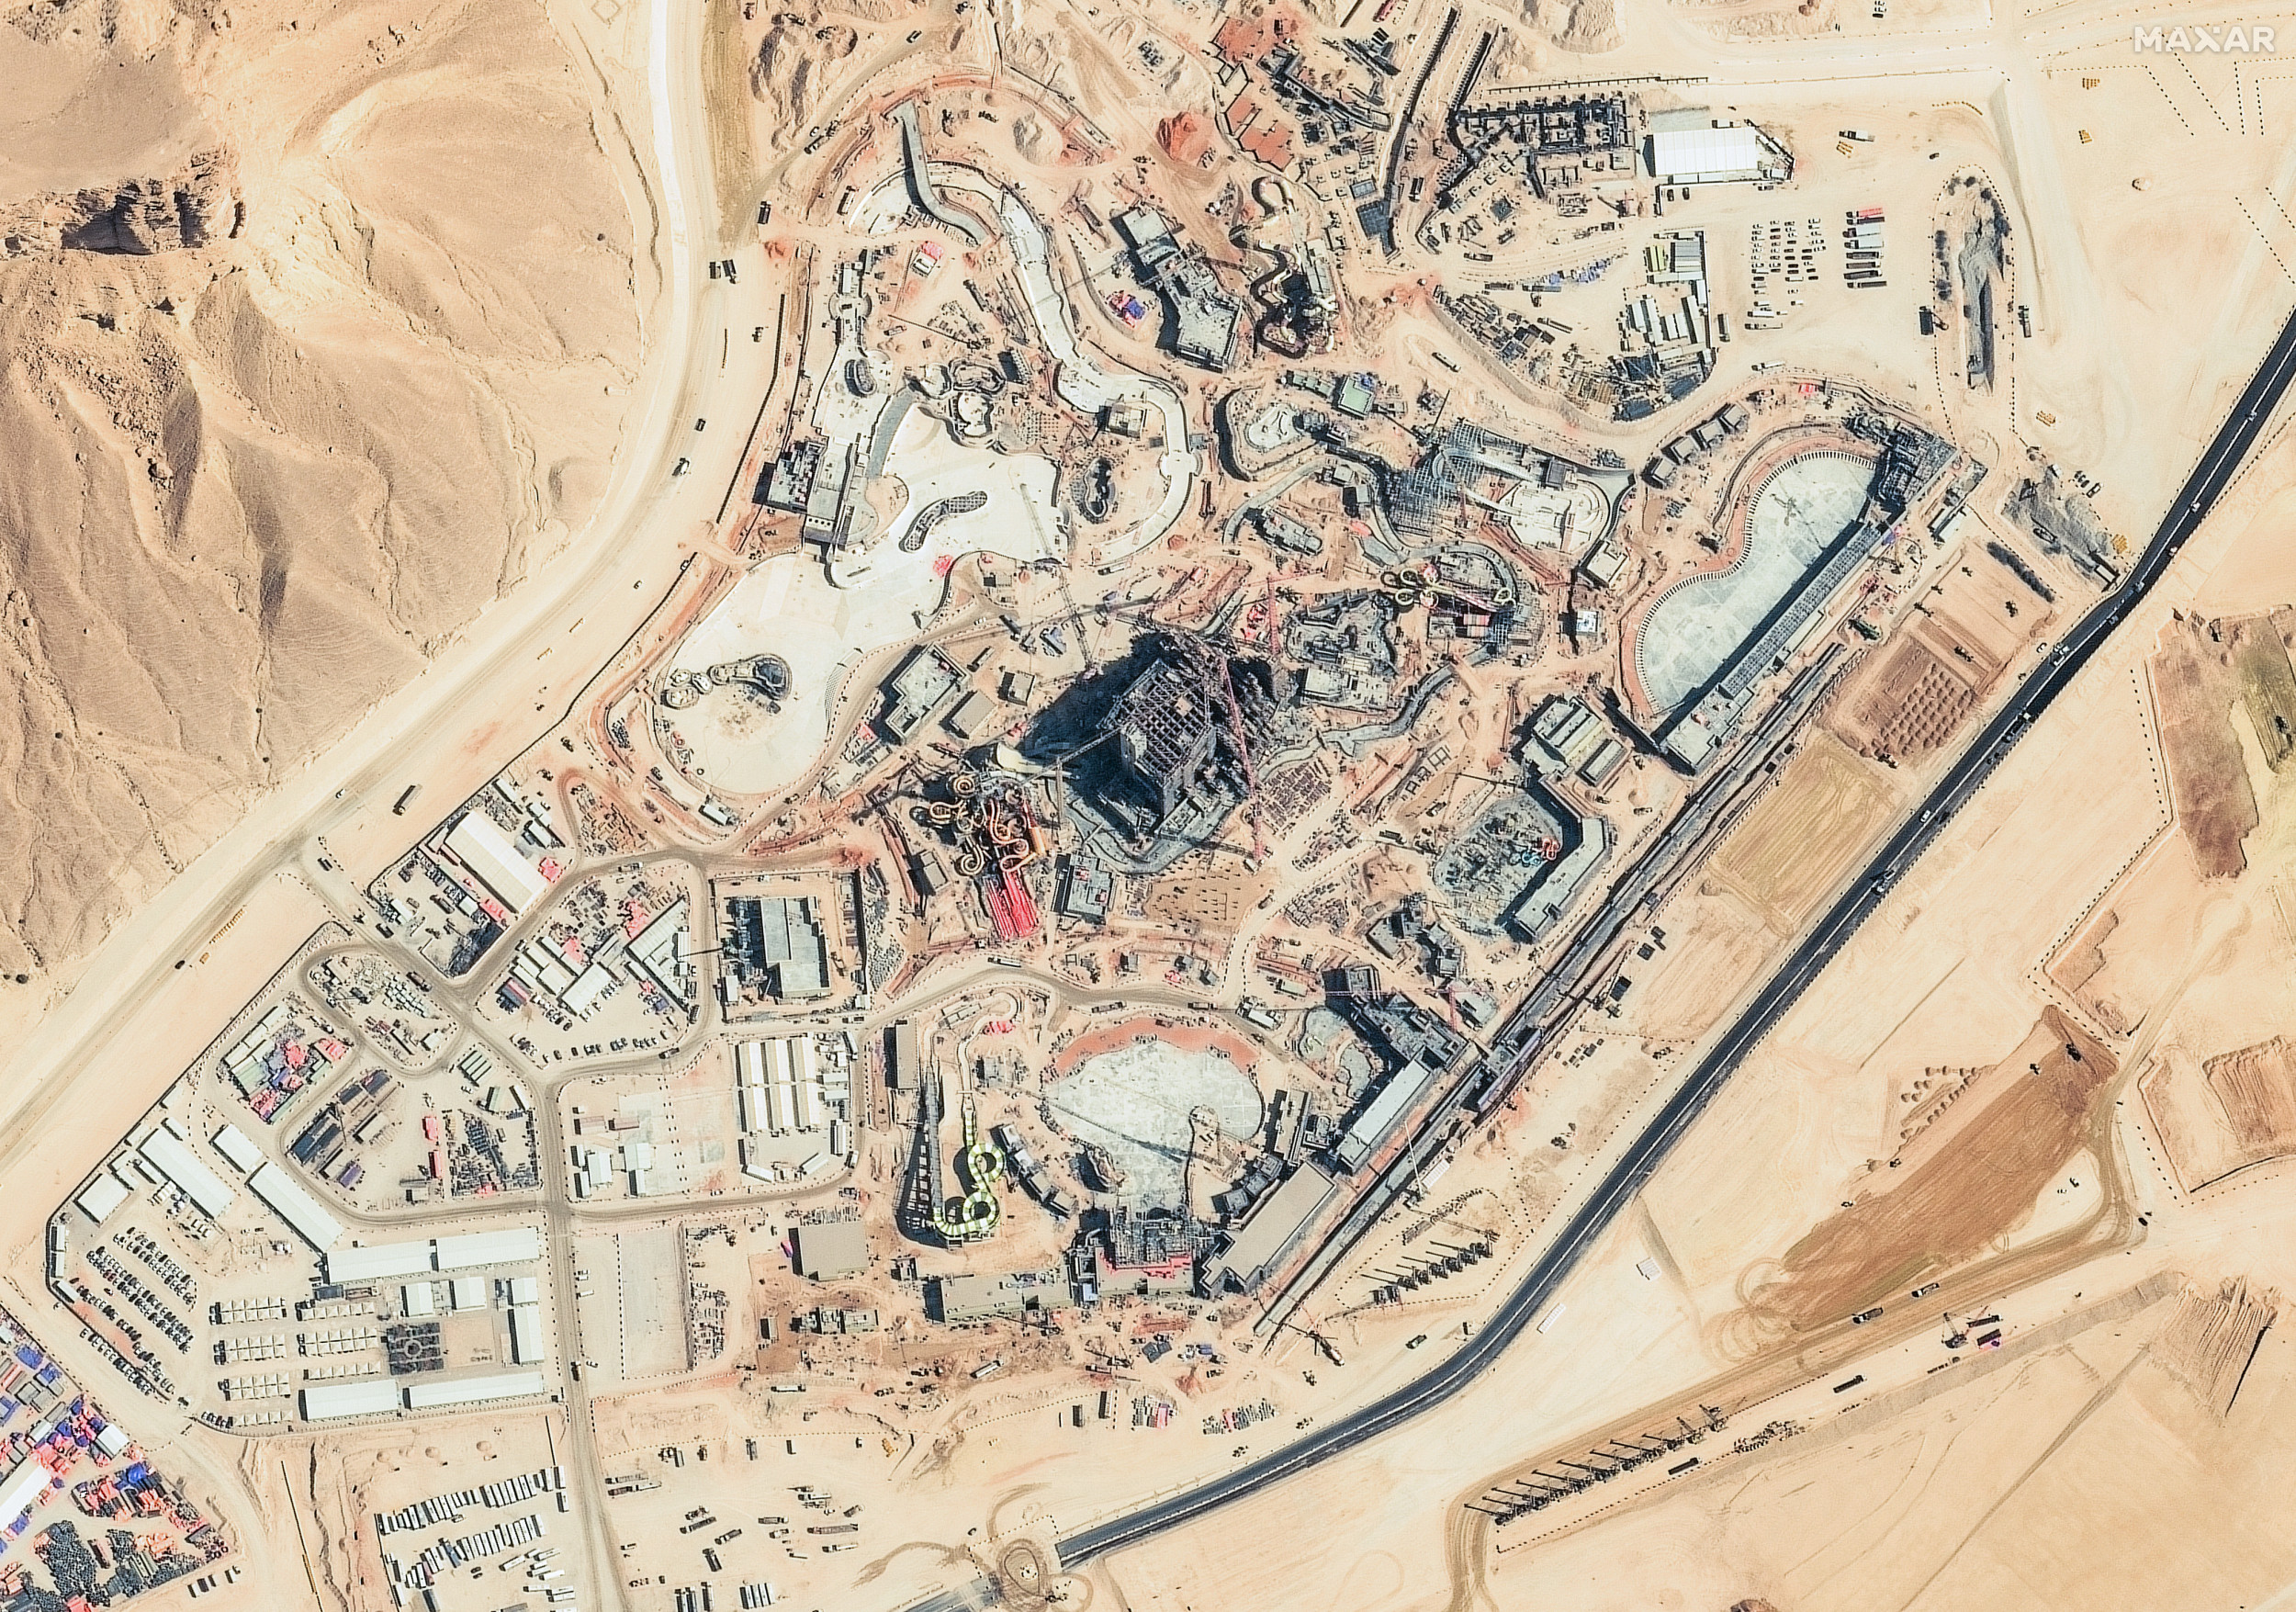 Des images satellite montrent qu’un immense parc à thème prend forme en Arabie Saoudite